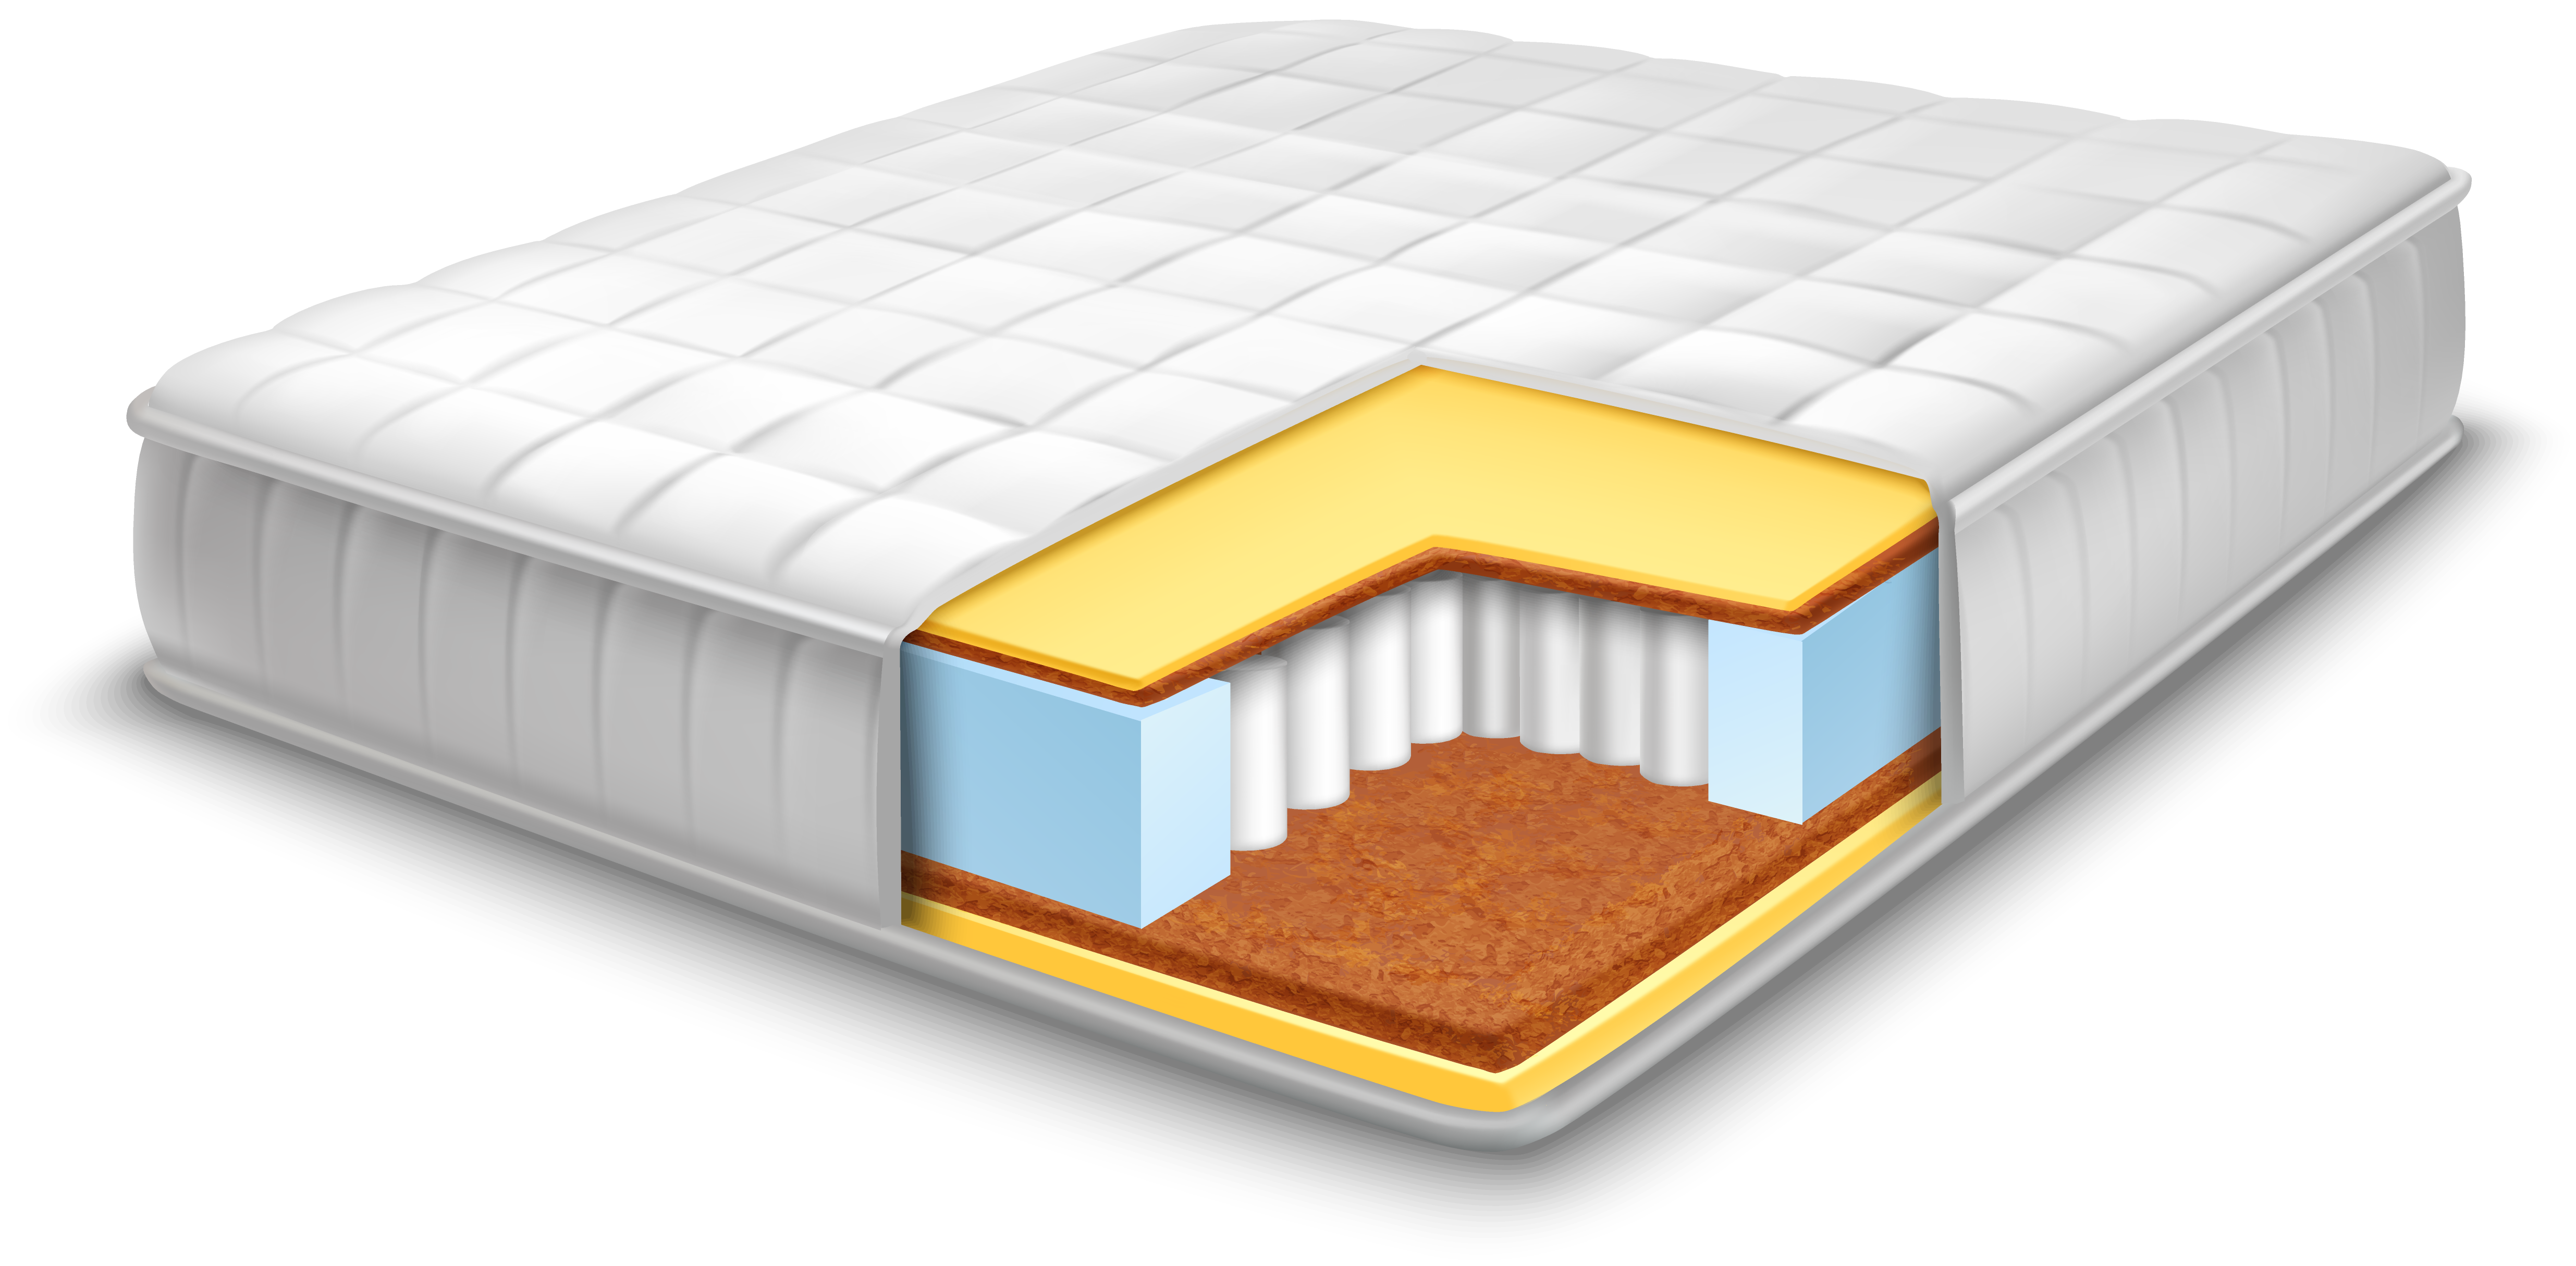 inside a mattress